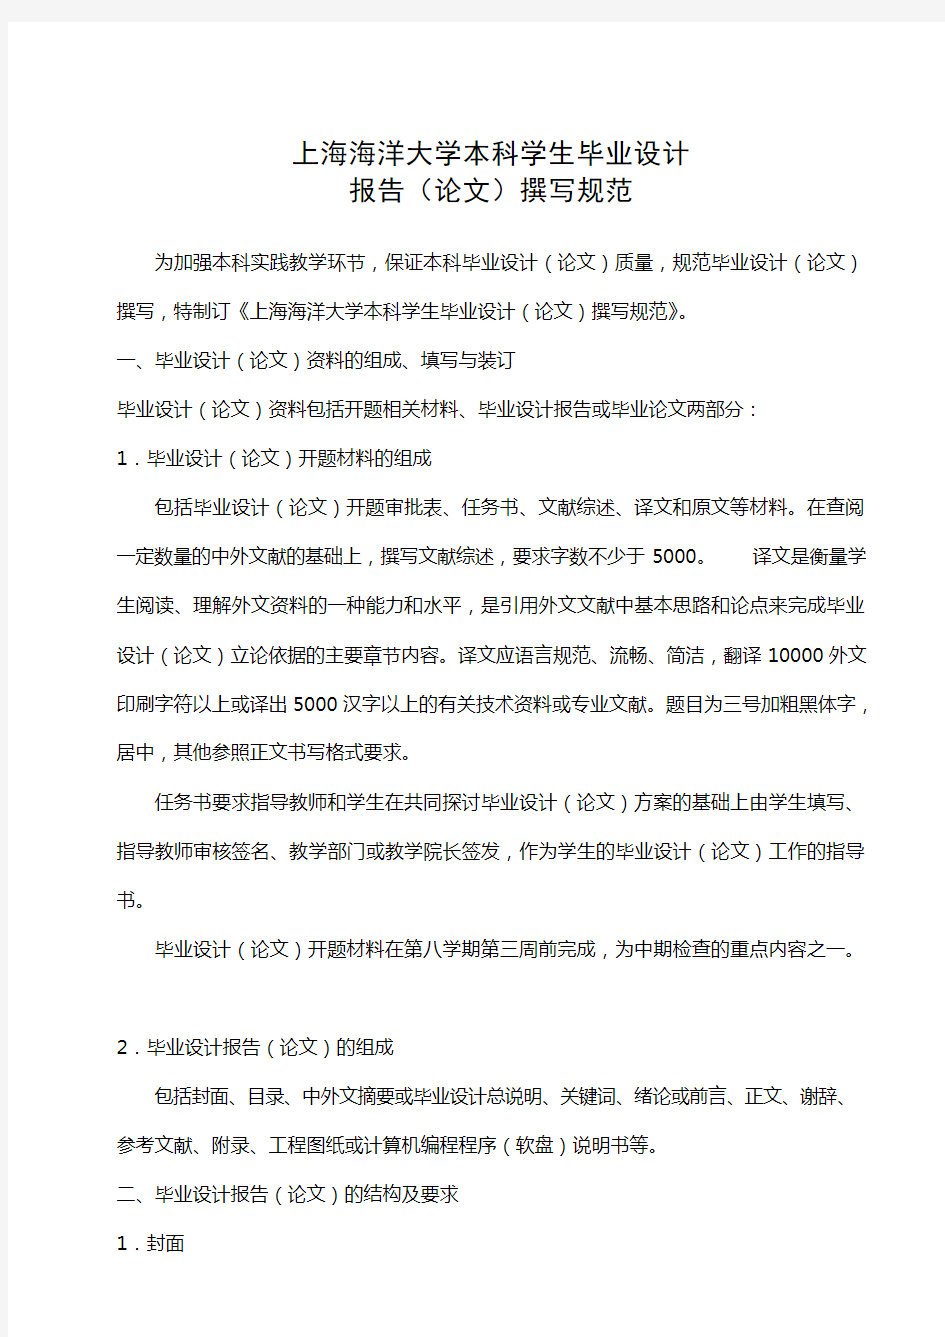 上海海洋大学本科学生毕业设计报告(论文)撰写规范